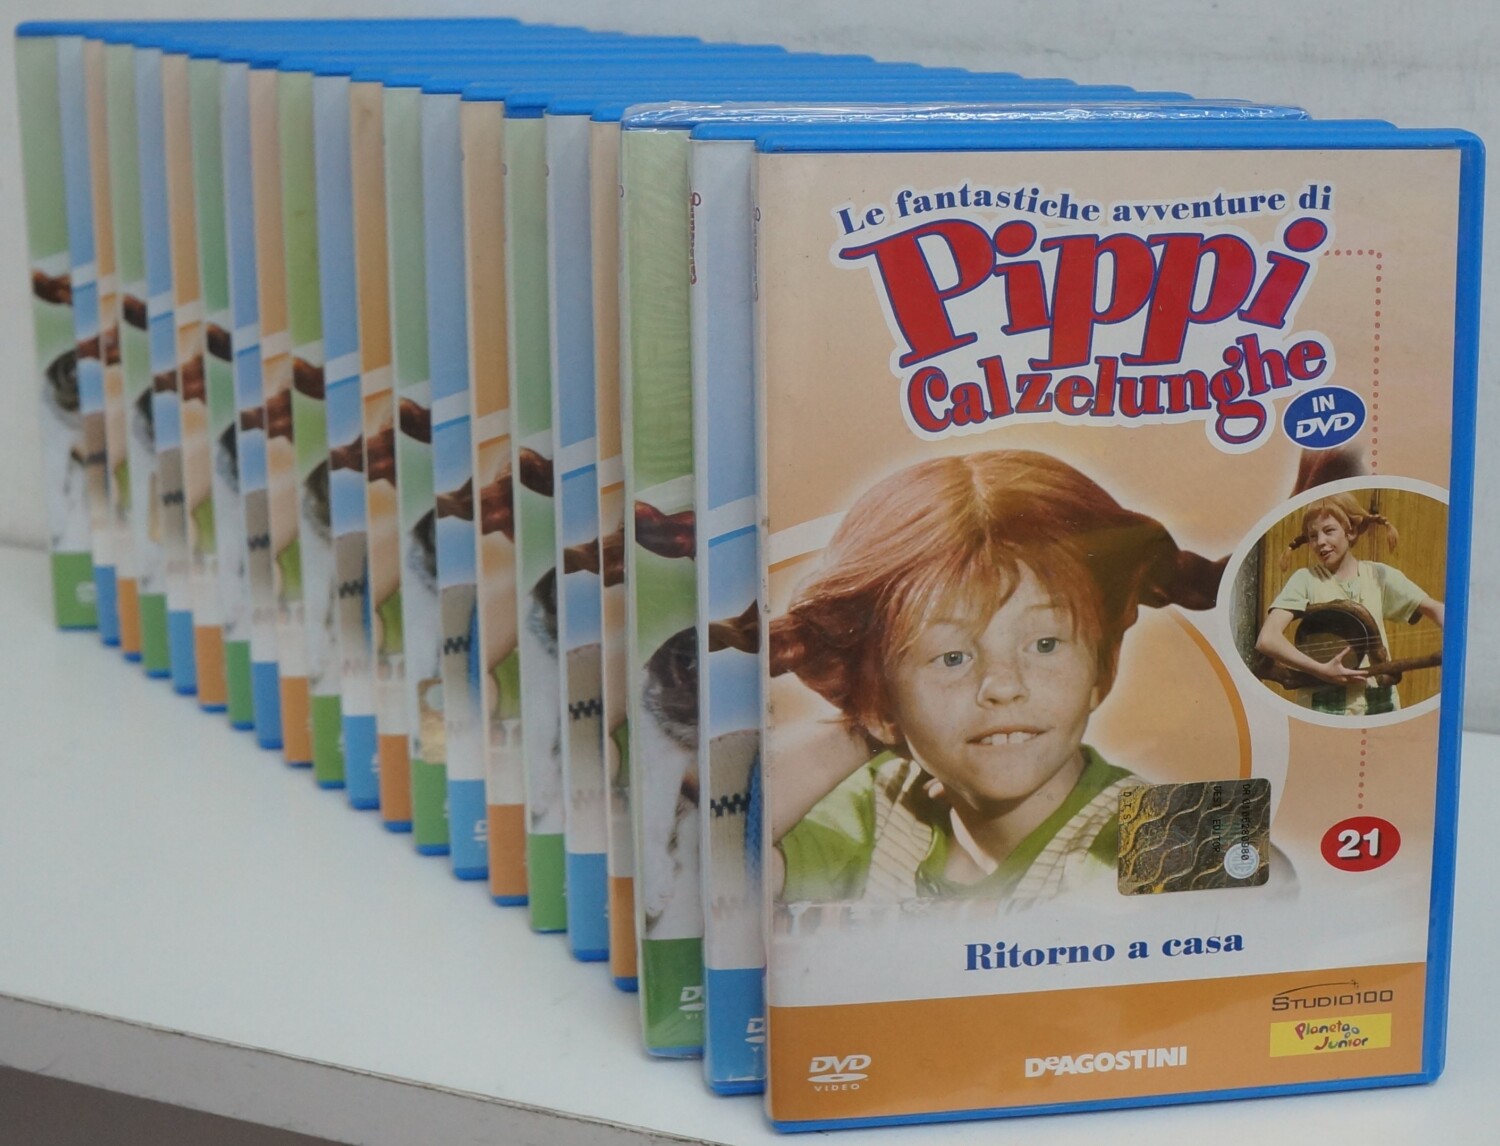 Le fantastiche avventure di Pippi Calzelunghe. Serie Completa (Episodi  1-21) (21 DVD) Versione da edicola. DVD in Italiano – Emporio di milo